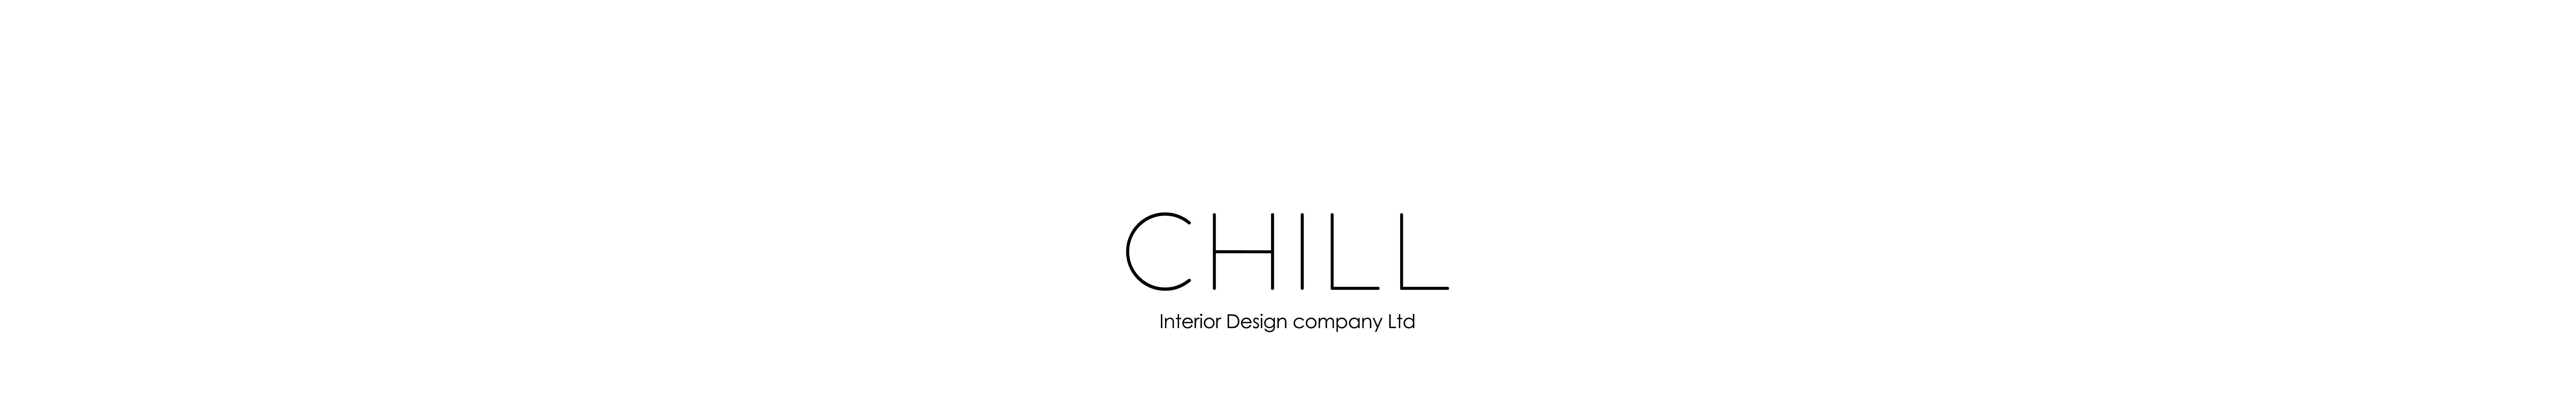 Chill Interior Design Company's profile banner